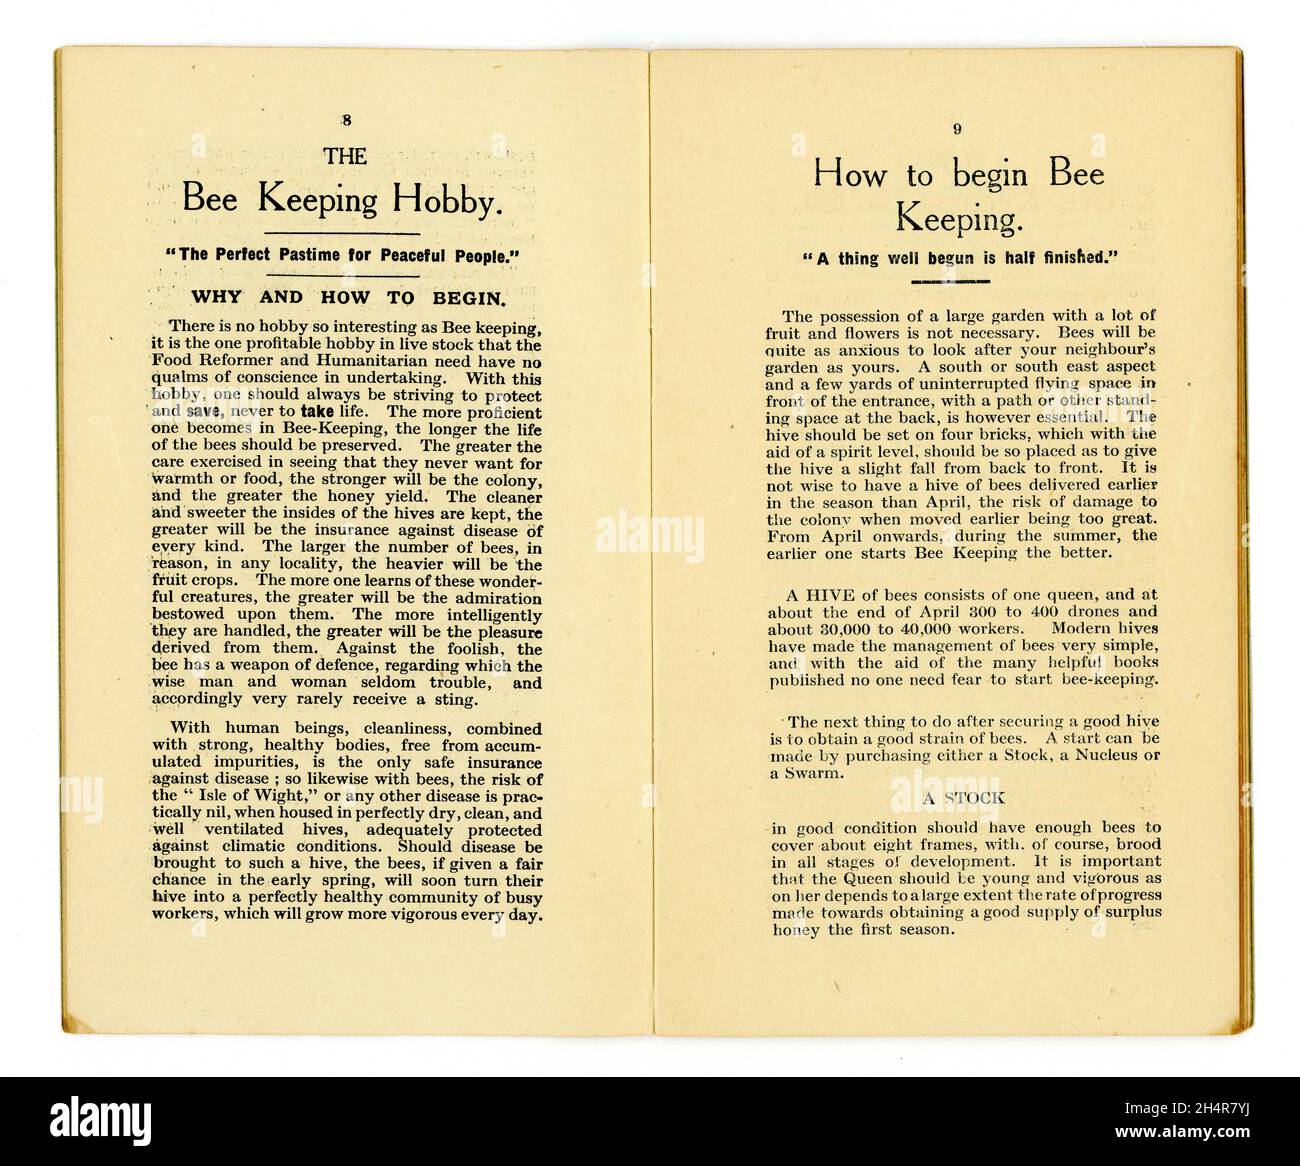 Innenseiten - Bienenhaltung Hobby, wie Bienen zu halten - Gesundheit aus der Lebensmittelbibliothek Nr. 12, - dieser in der Serie Honey and the Bee, von dem berühmten Essensgesundheitsautor der Zeit und Besitzer des ersten Reformhauses - James Henry Cook. Veröffentlicht In Birmingham,1927 Stockfoto